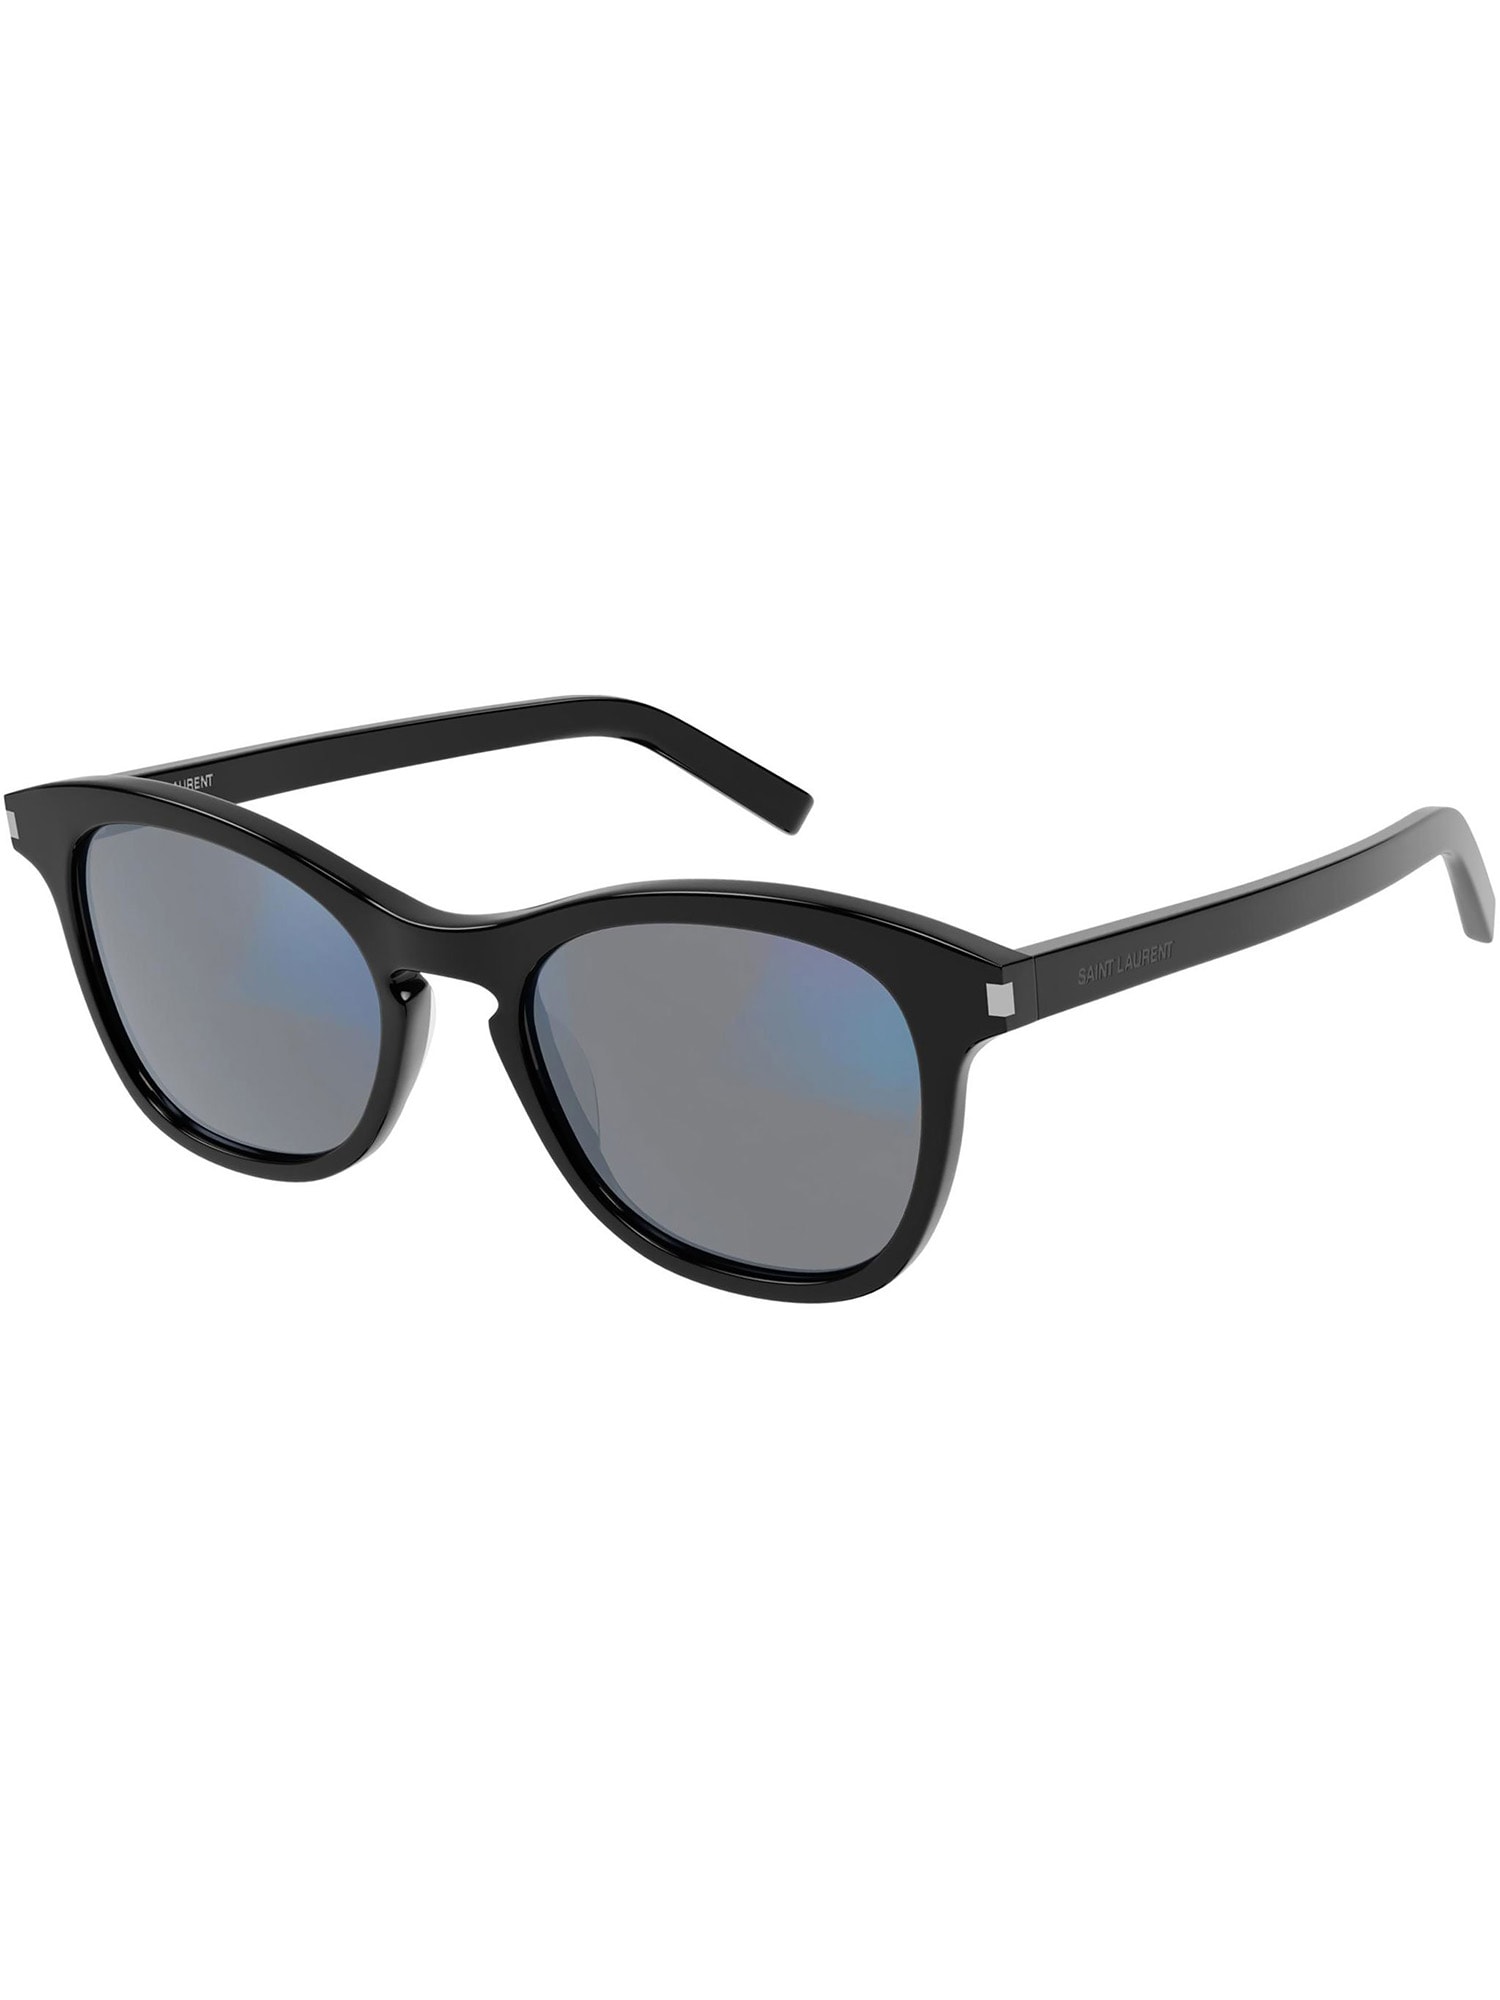 Saint Laurent Eyewear SL 356 Sunglasses